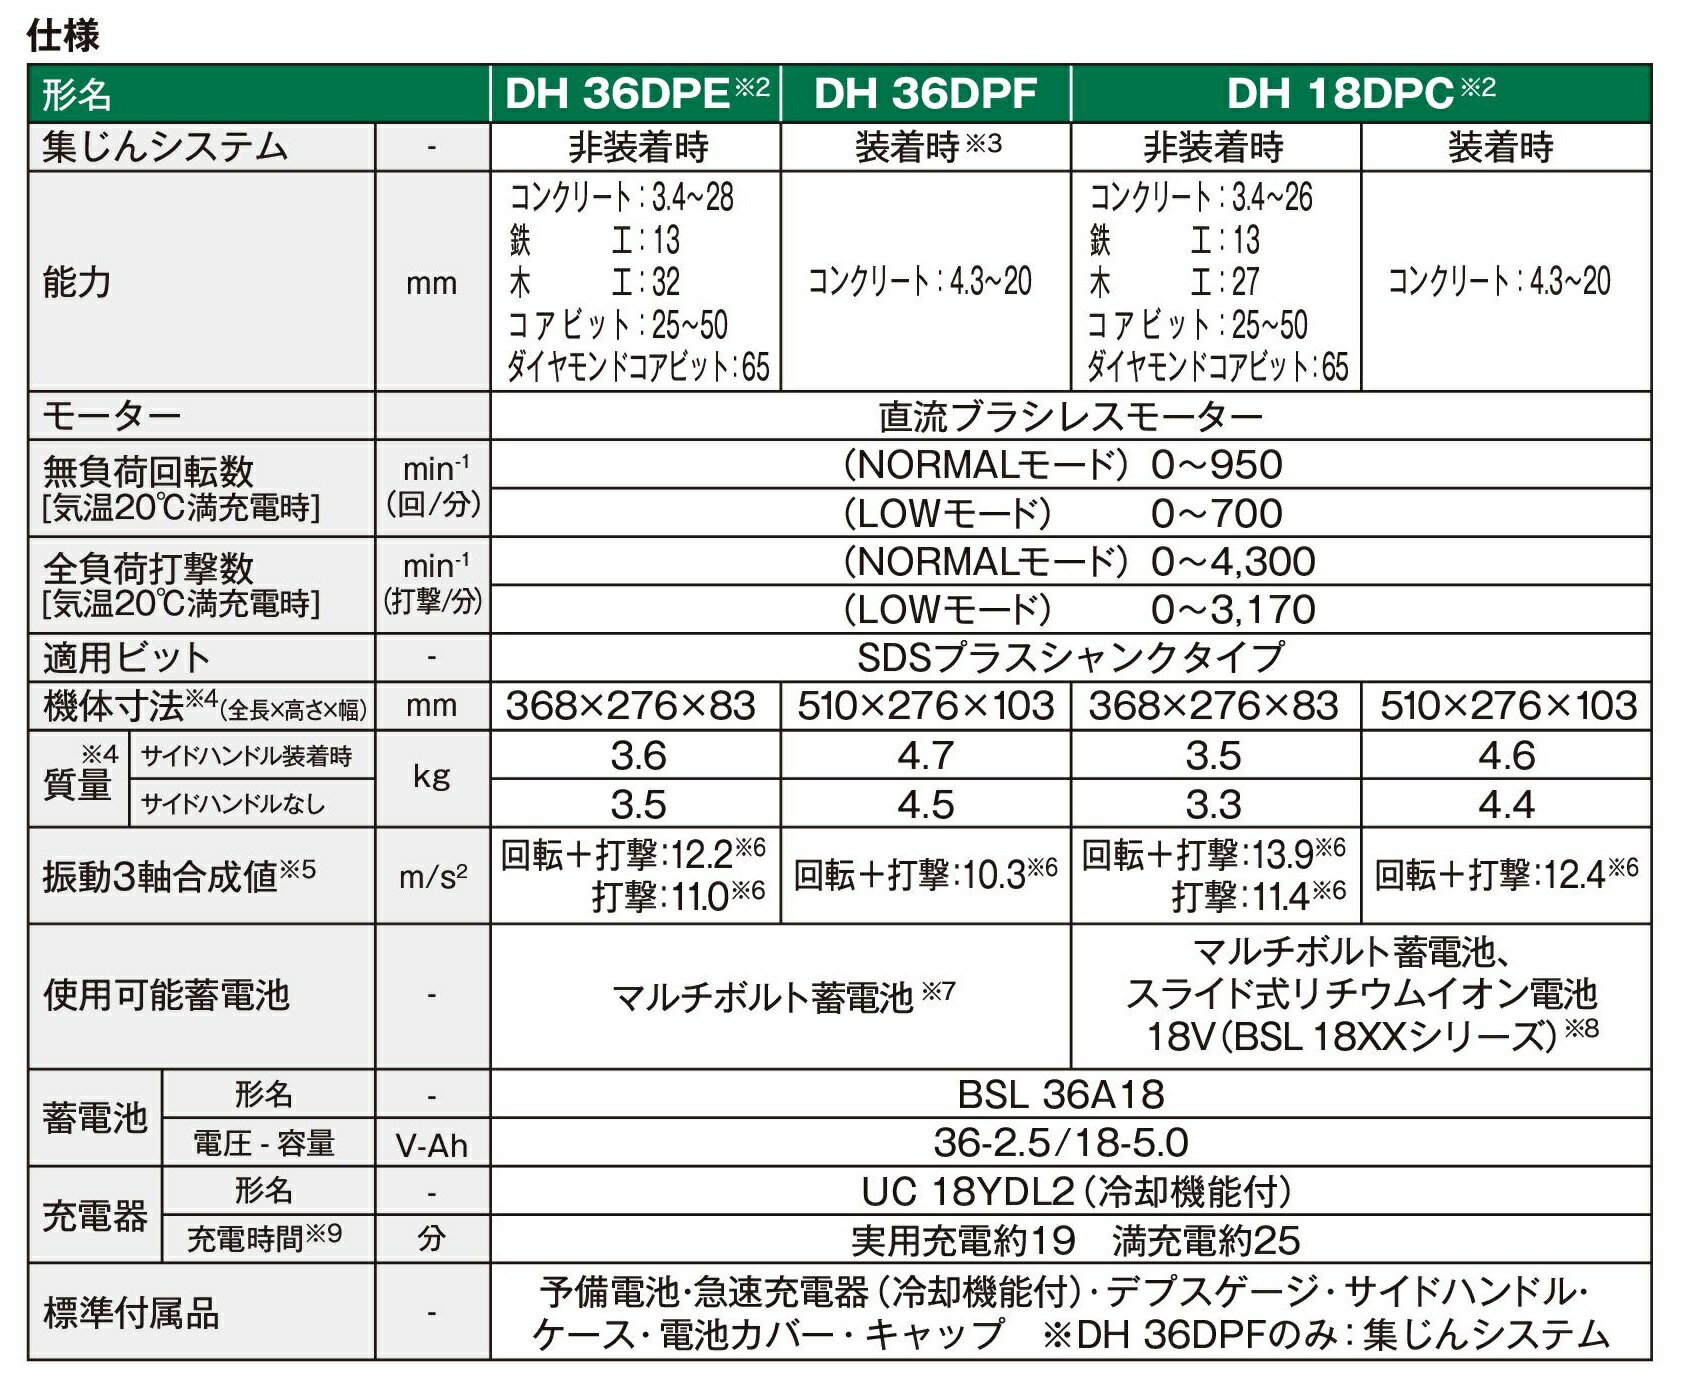 ハイコーキ(日立工機) 36V コードレスロータリハンマドリル DH36DPE（2XP）マルチボルト蓄電池〔残量表示付〕（BSL36A18）×2個・急速充電器（UC 18YDL2）・ケース付 ※沖縄・離島は別途送料が必要 2